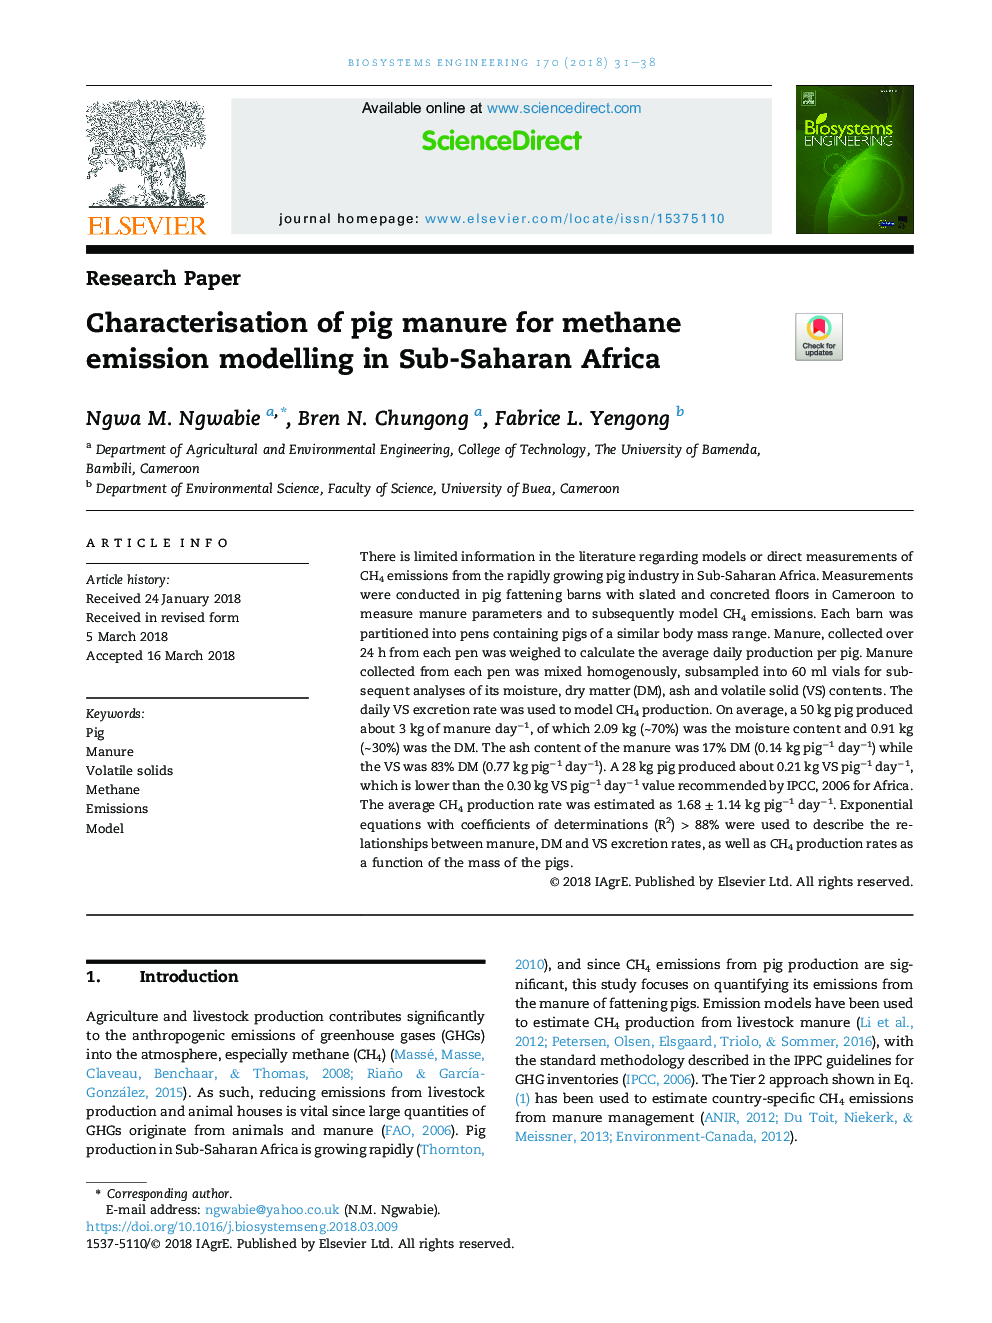 مشخصات کود نیتروژن برای مدل سازی انتشار متان در کشورهای جنوب صحرای آفریقا 